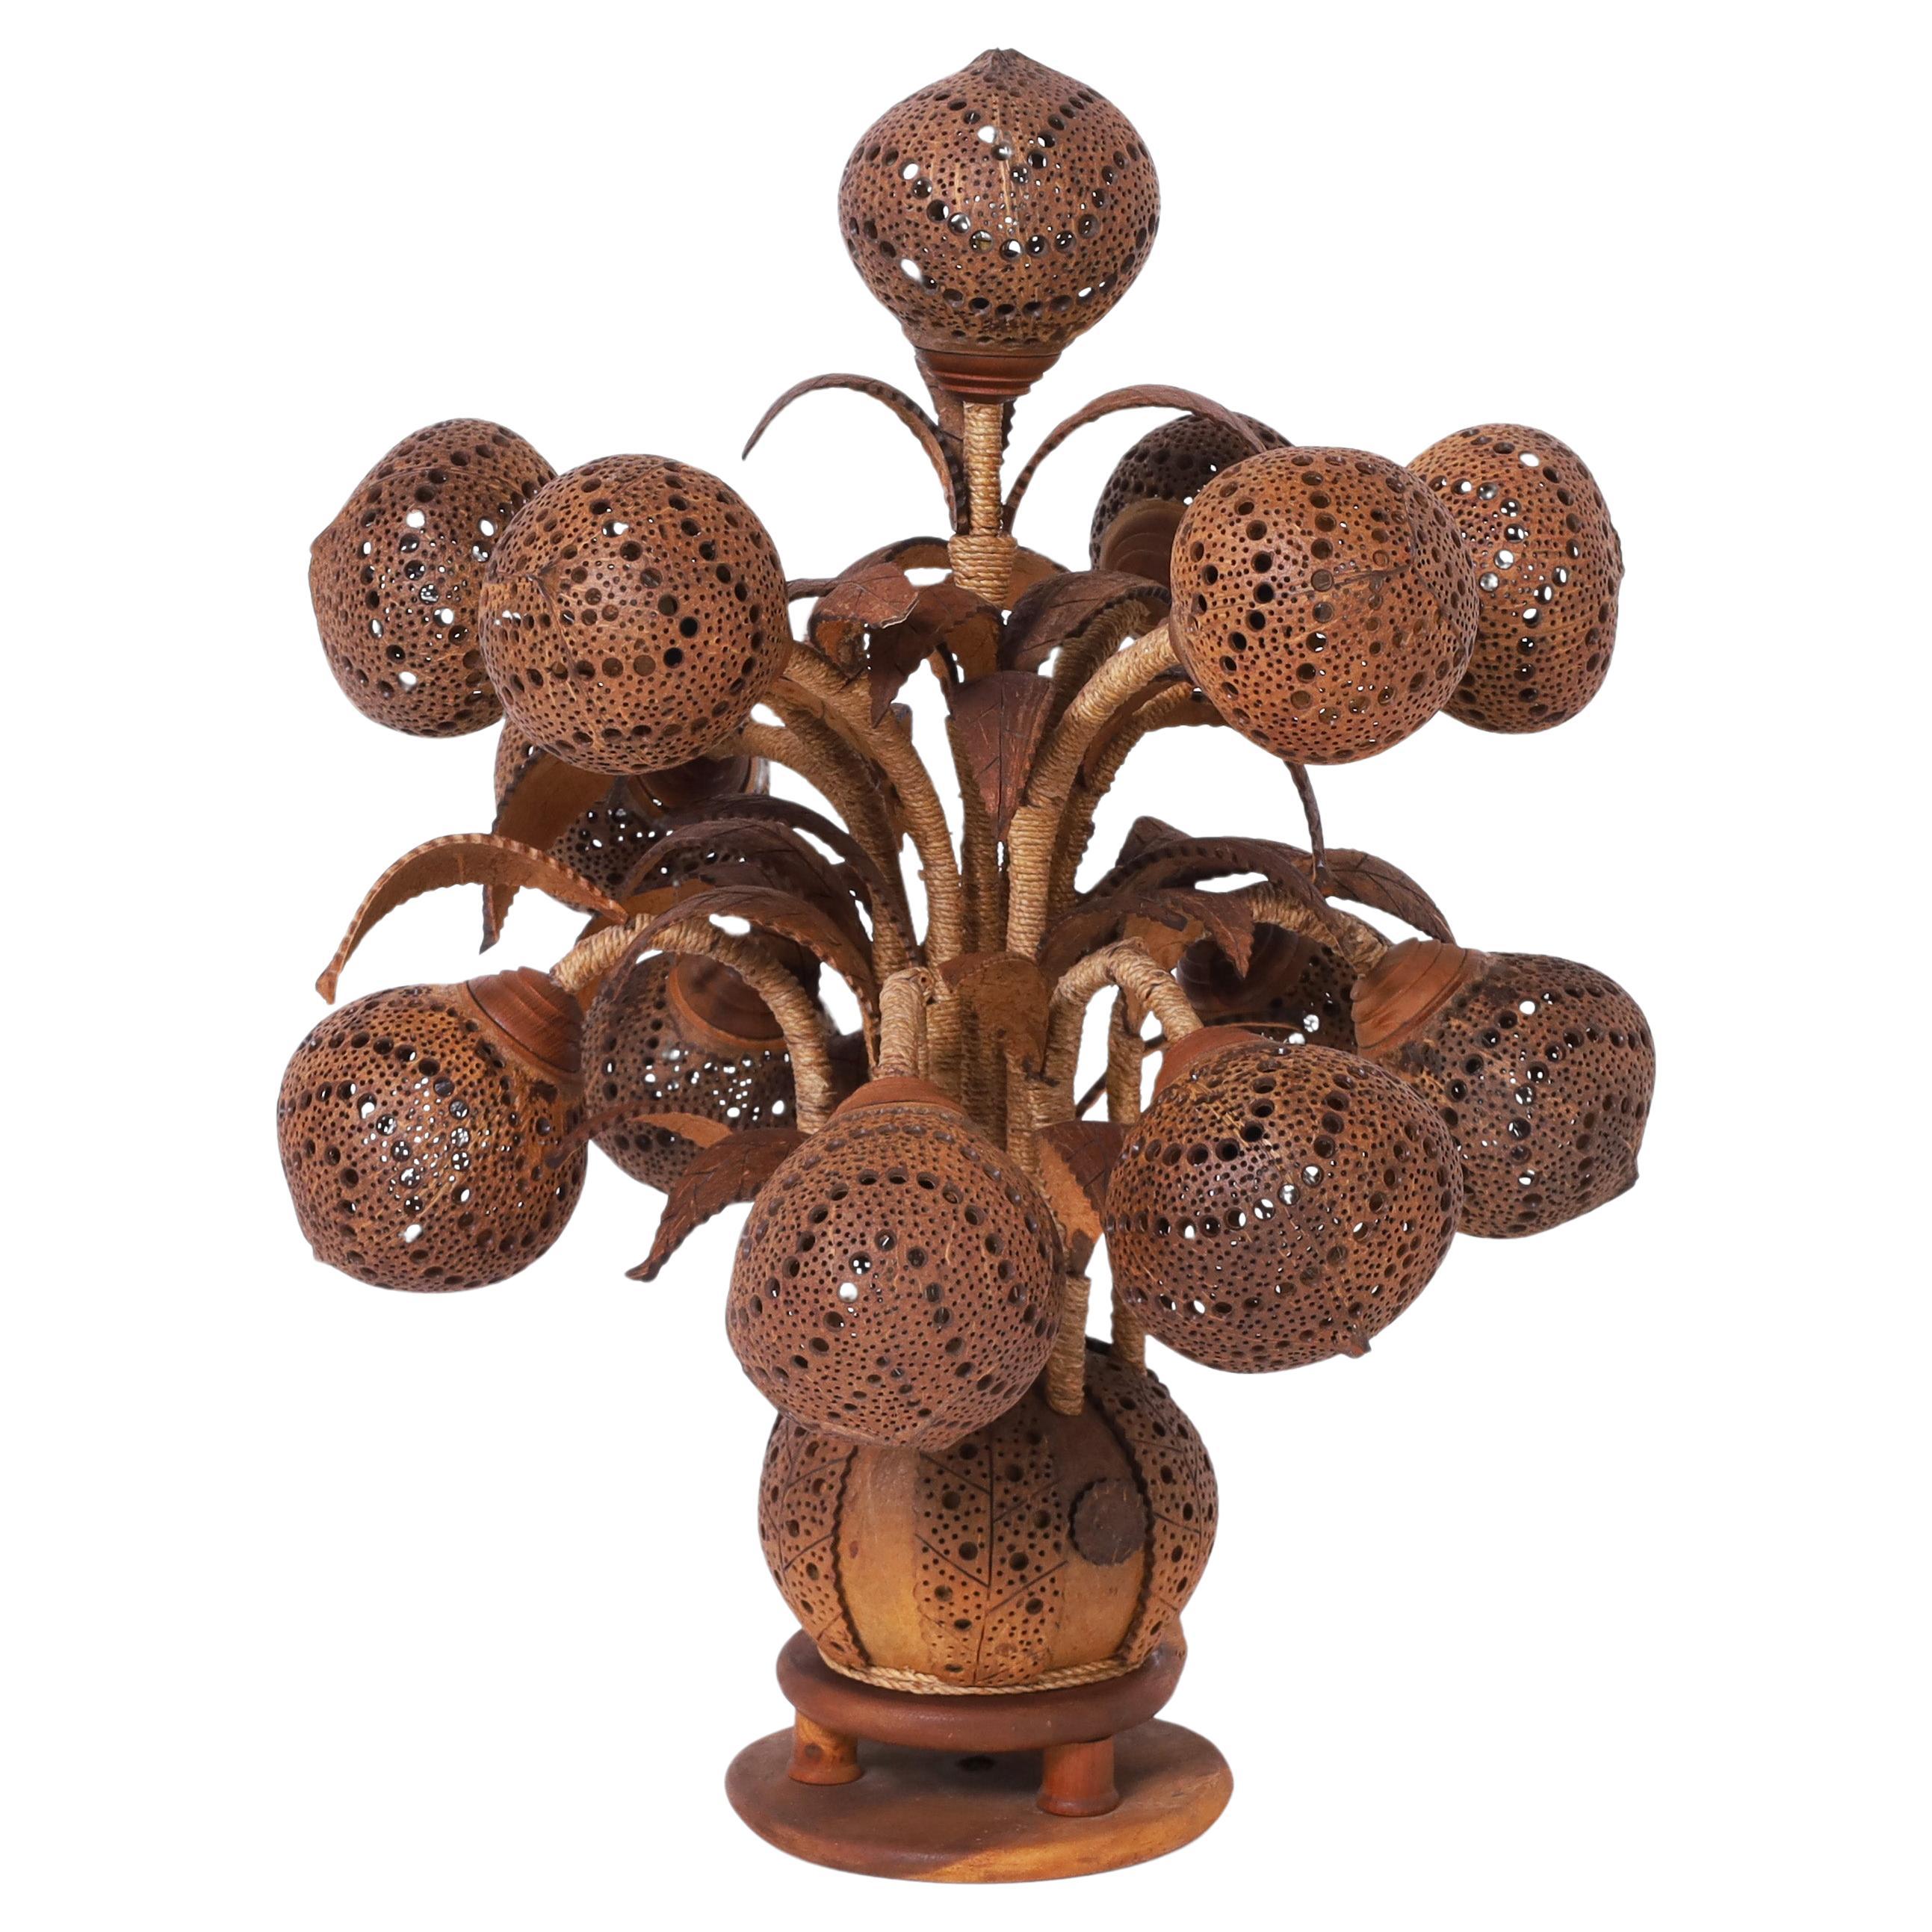 Seltene und ungewöhnliche Tischlampe aus durchbohrter Kokosnussschale